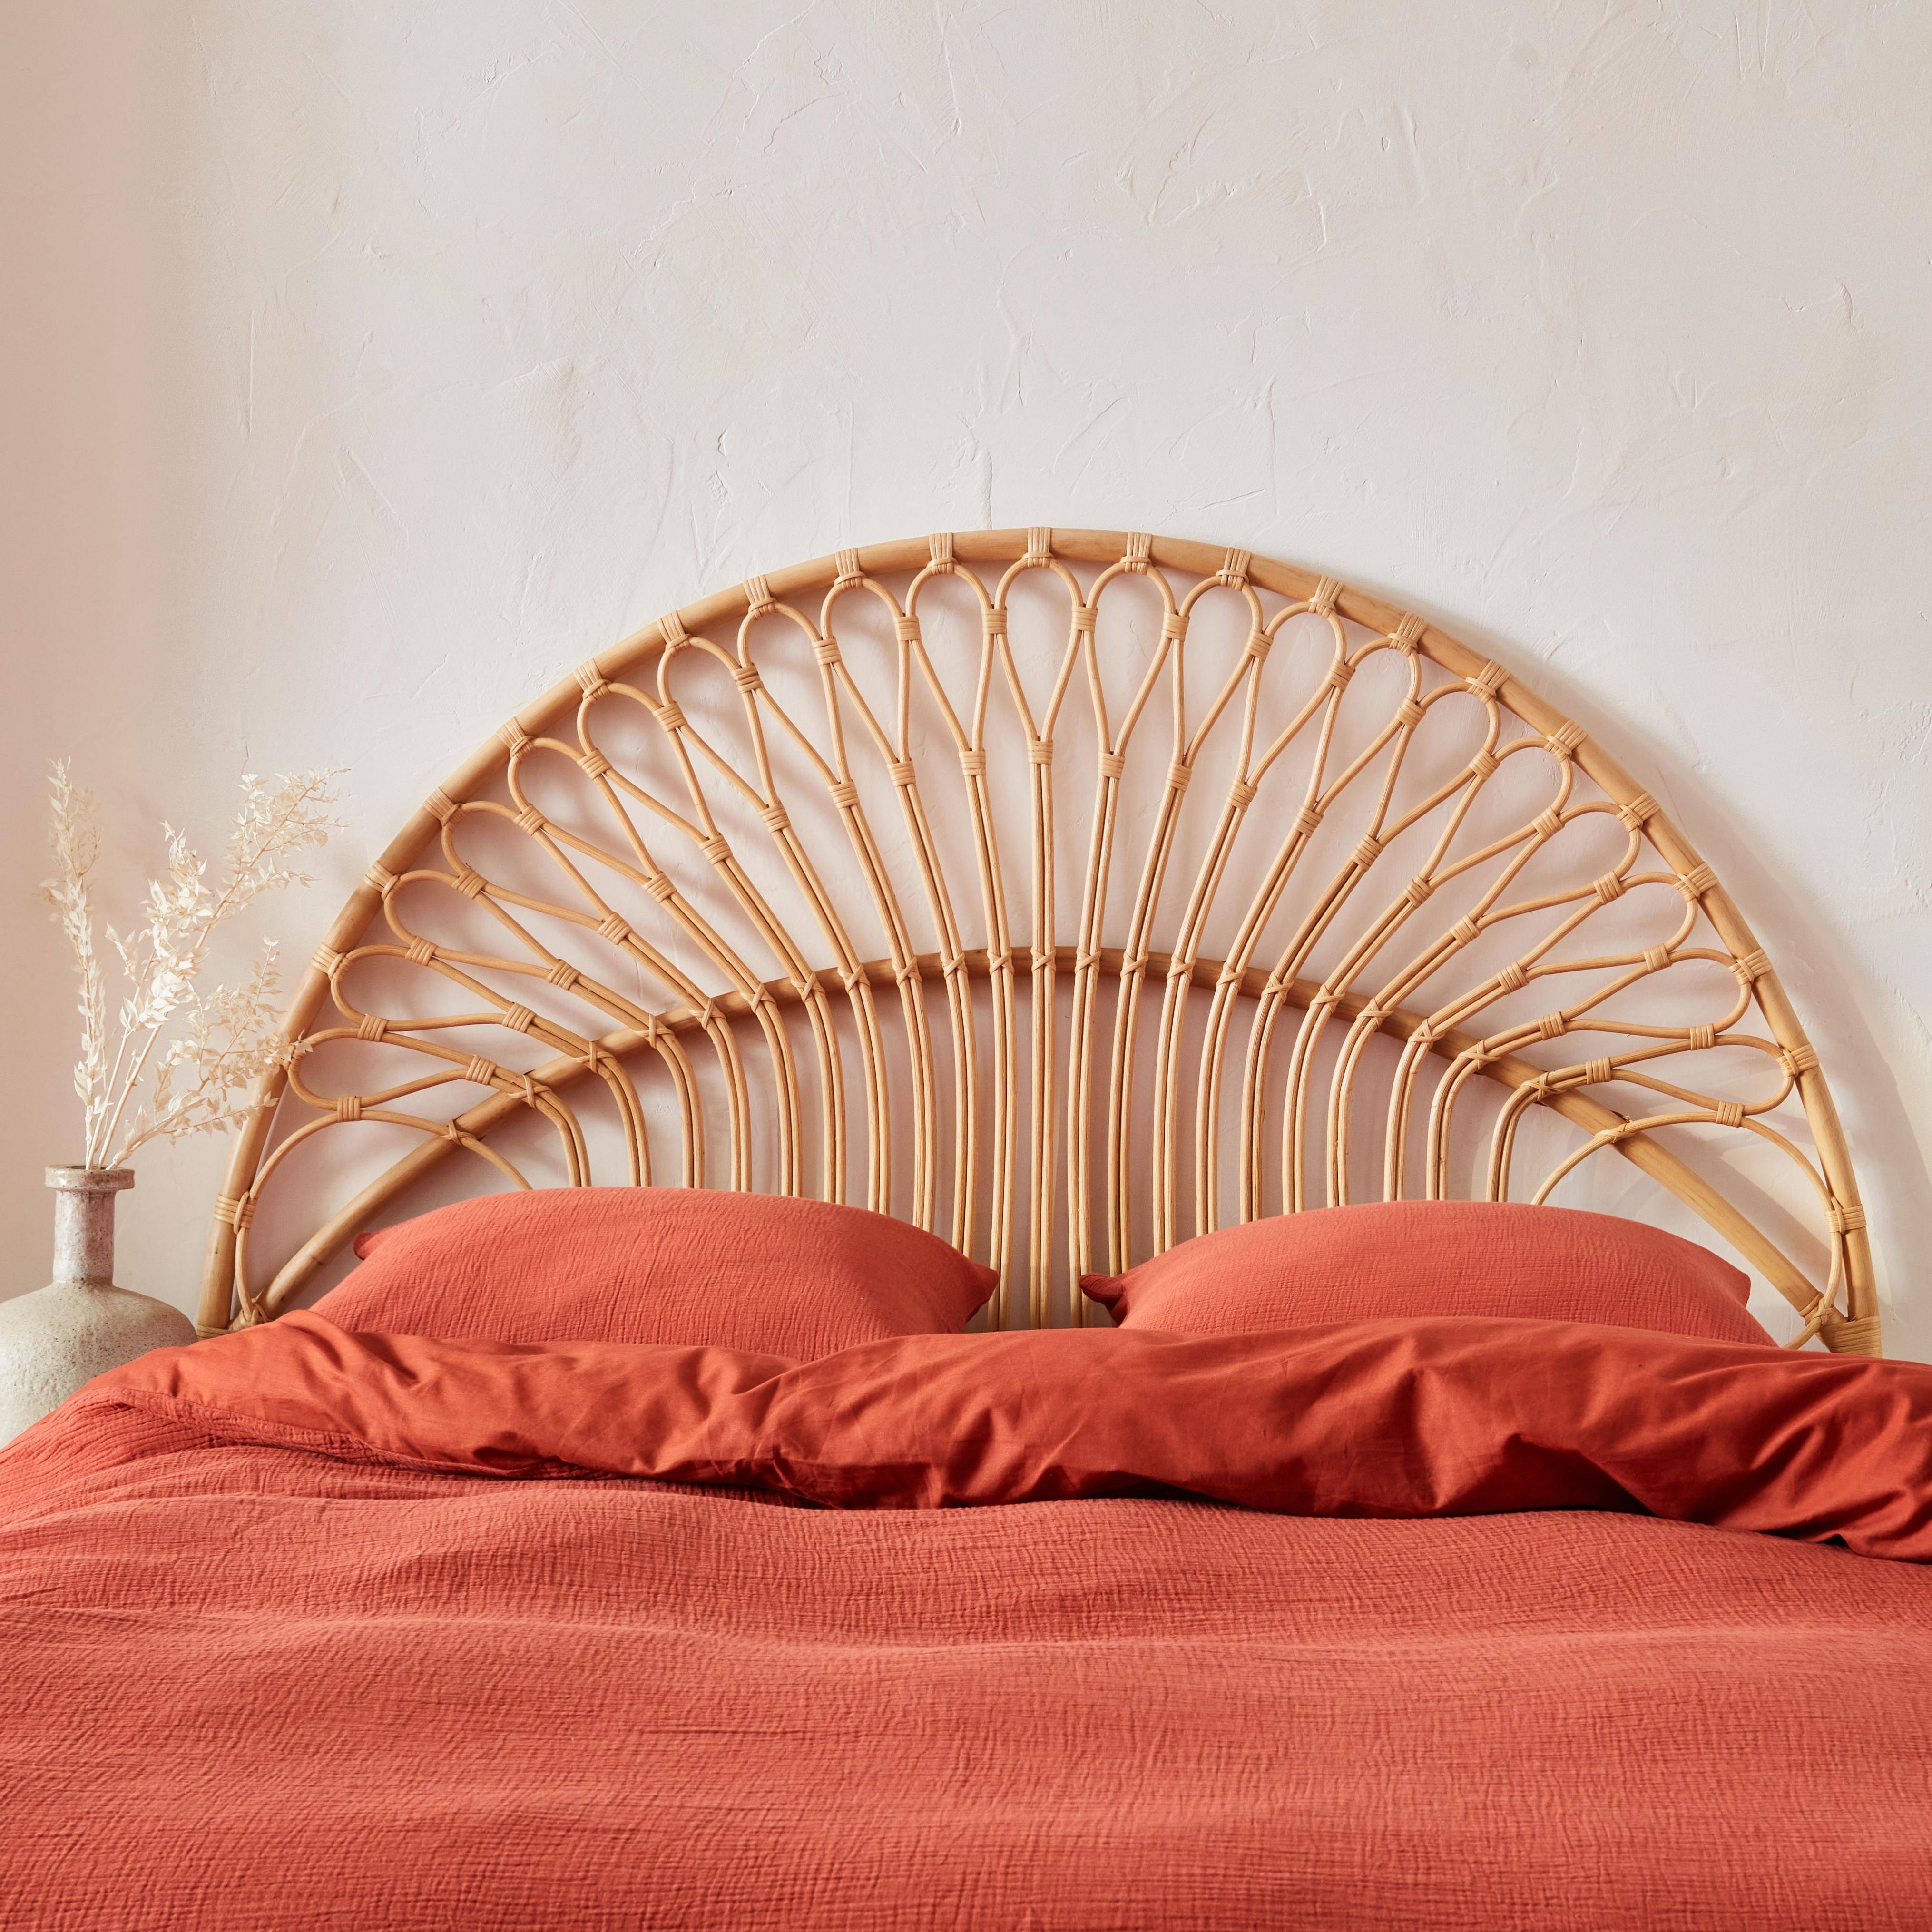 Tête de lit en rotin naturel compatible avec les lits d'une largeur de 160cm, L 160 x P3 x H130cm,sweeek,Photo2